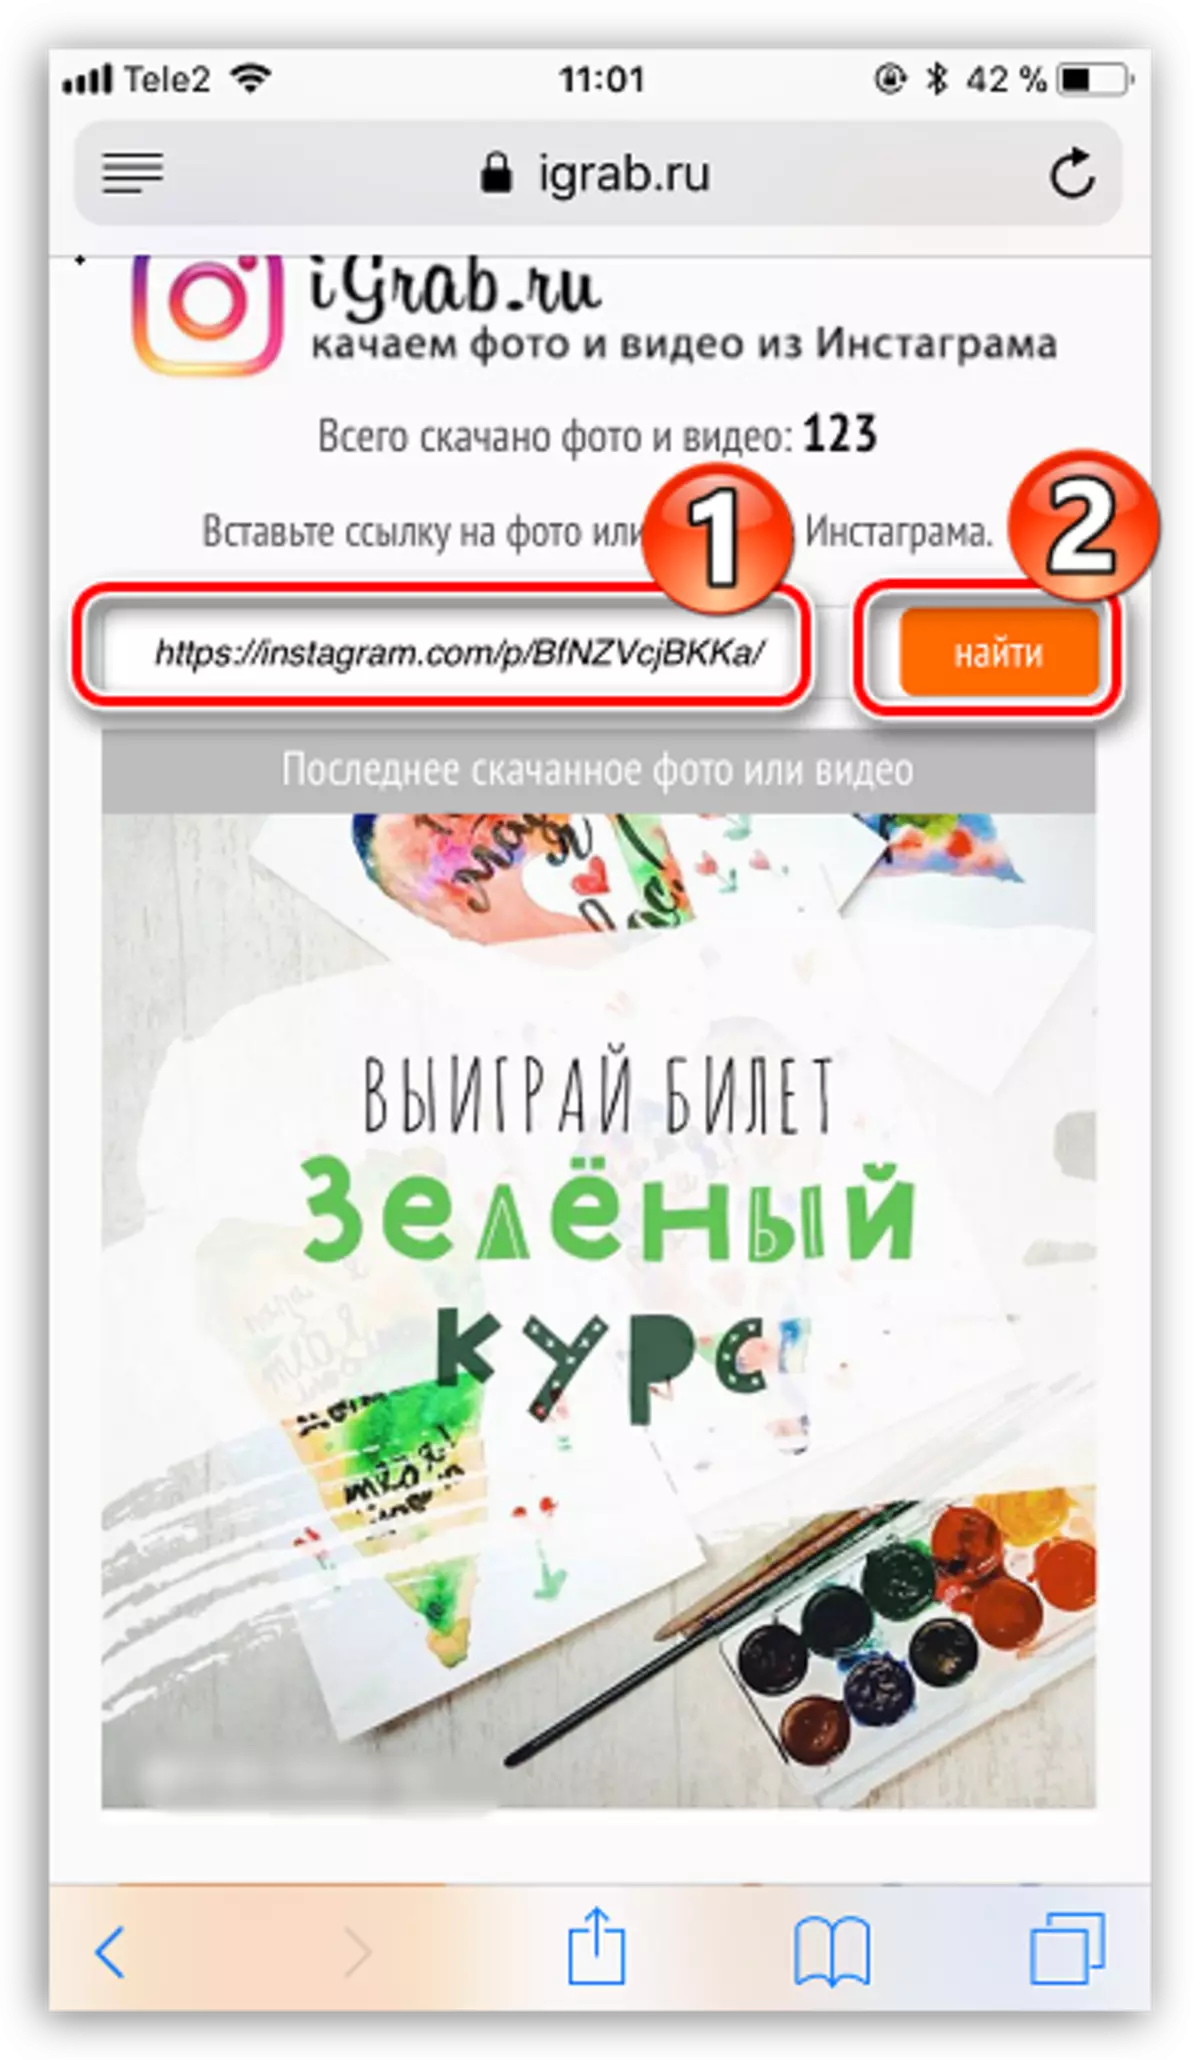 Søg video på igrab.ru hjemmeside